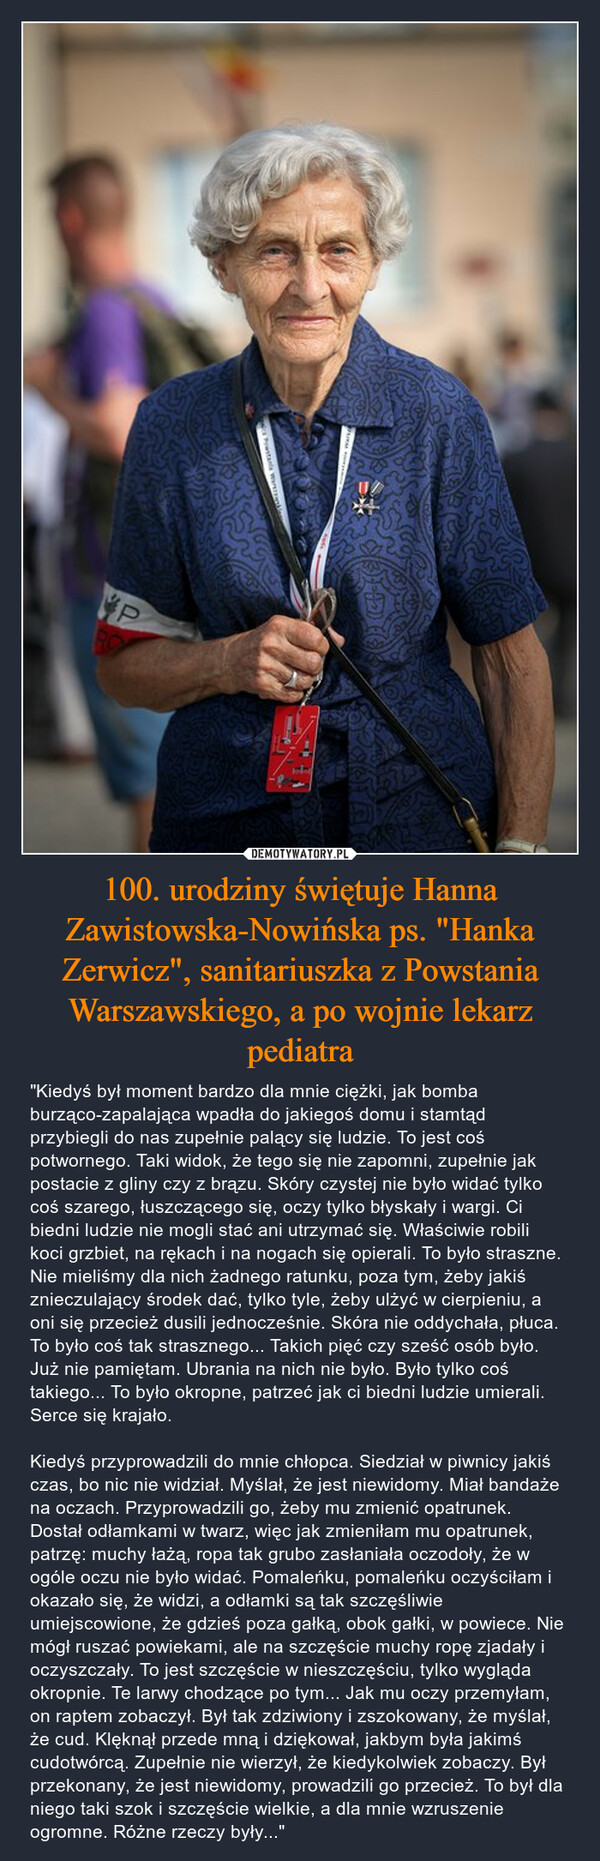 100. urodziny świętuje Hanna Zawistowska-Nowińska ps. "Hanka Zerwicz", sanitariuszka z Powstania Warszawskiego, a po wojnie lekarz pediatra